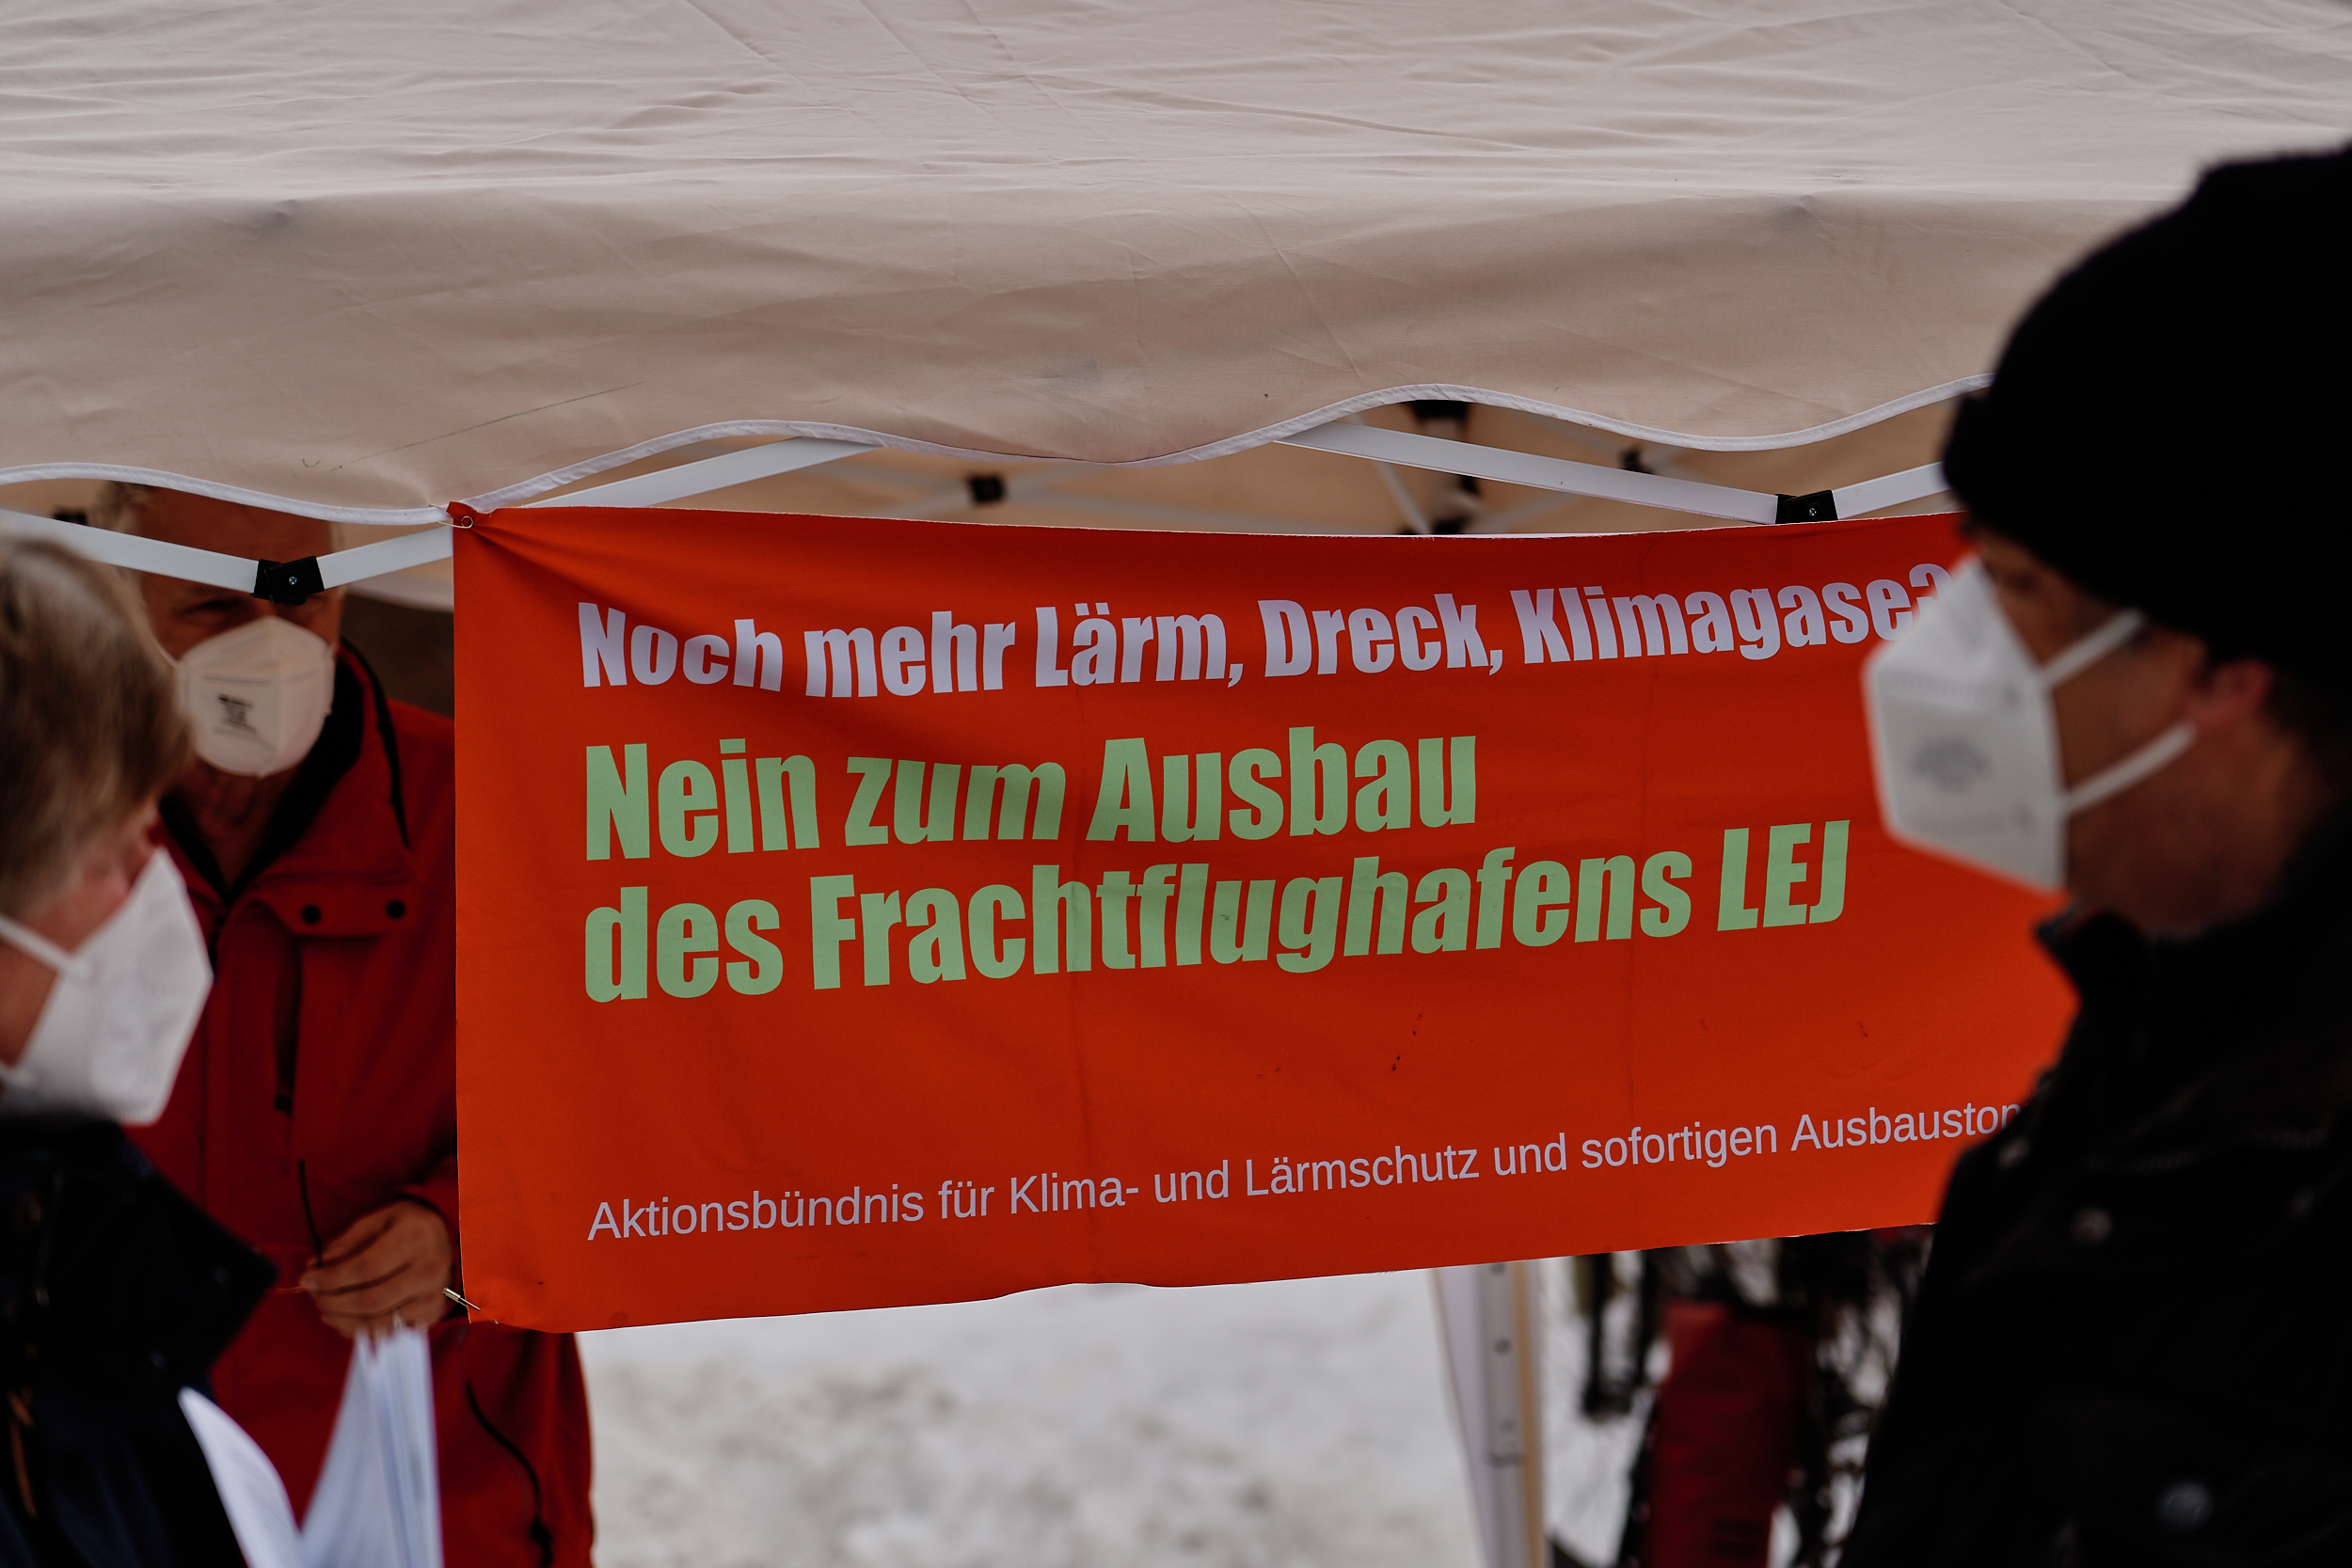 Plakat auf der Demonstration zur Übergabe der Einwände: „ Nein zum Ausbau des Frachtflughafens LEJ“